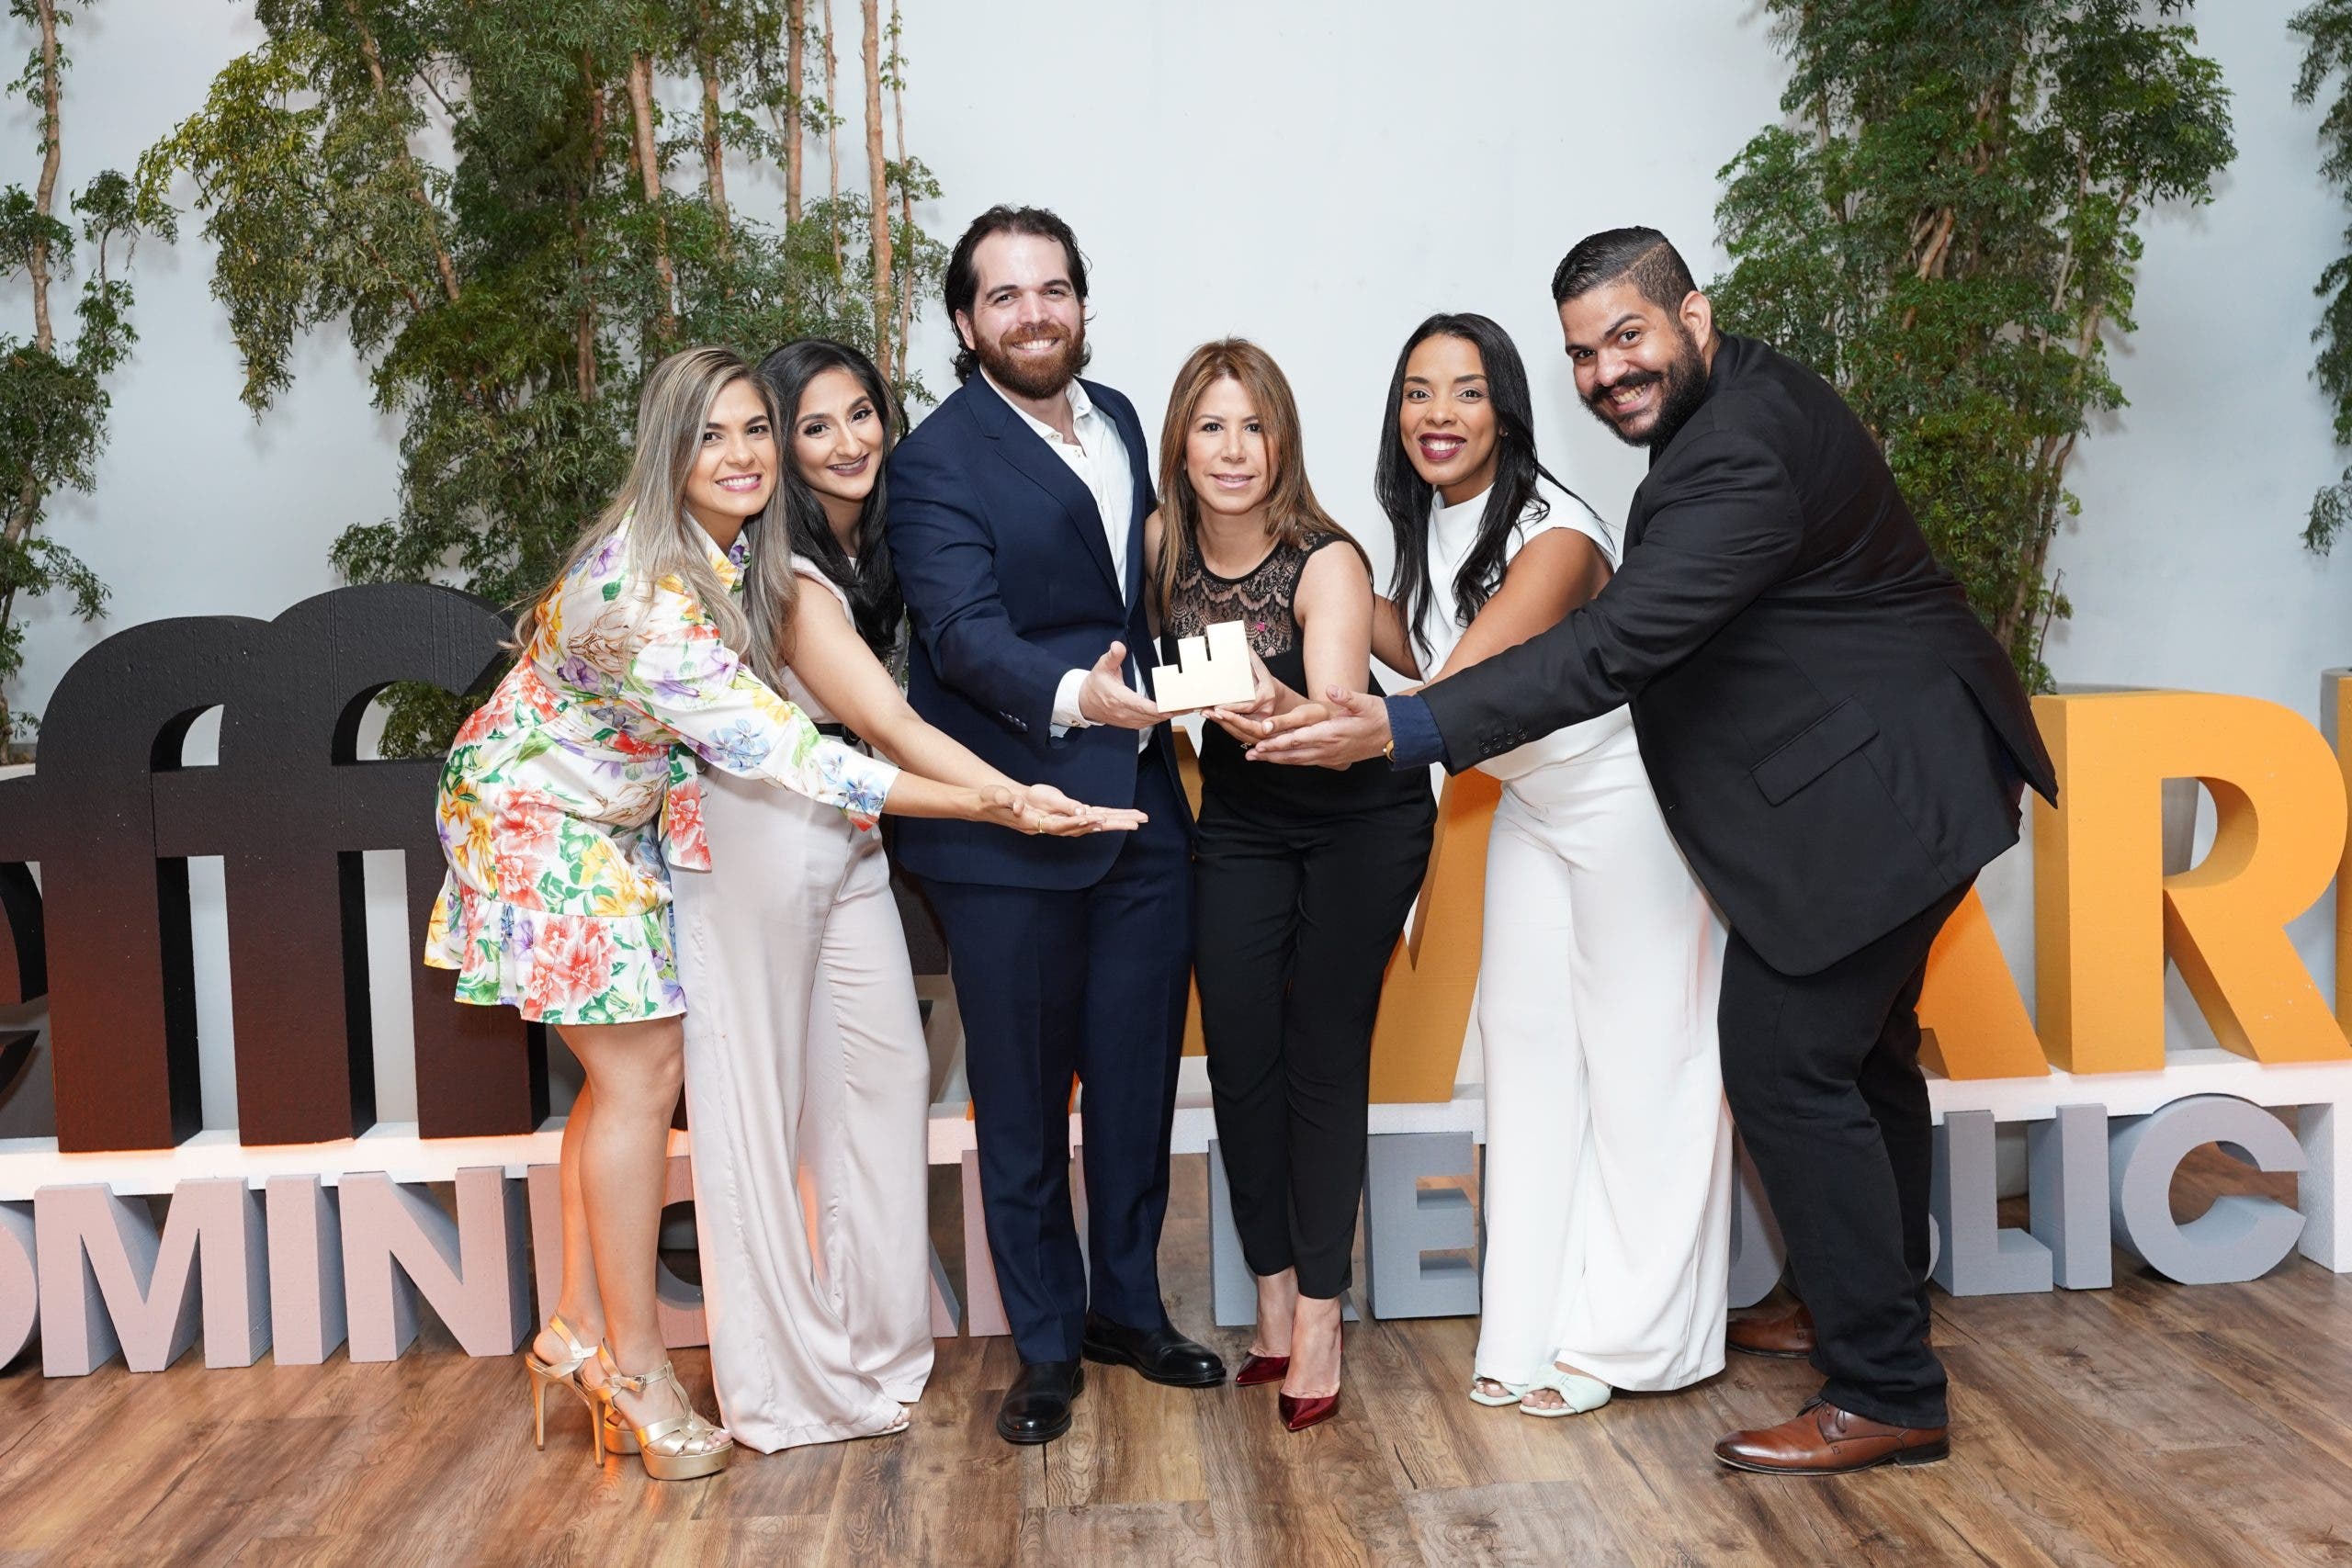 Campaña “Superkids: Misión Salud” de Amadita  gana un premio Effie